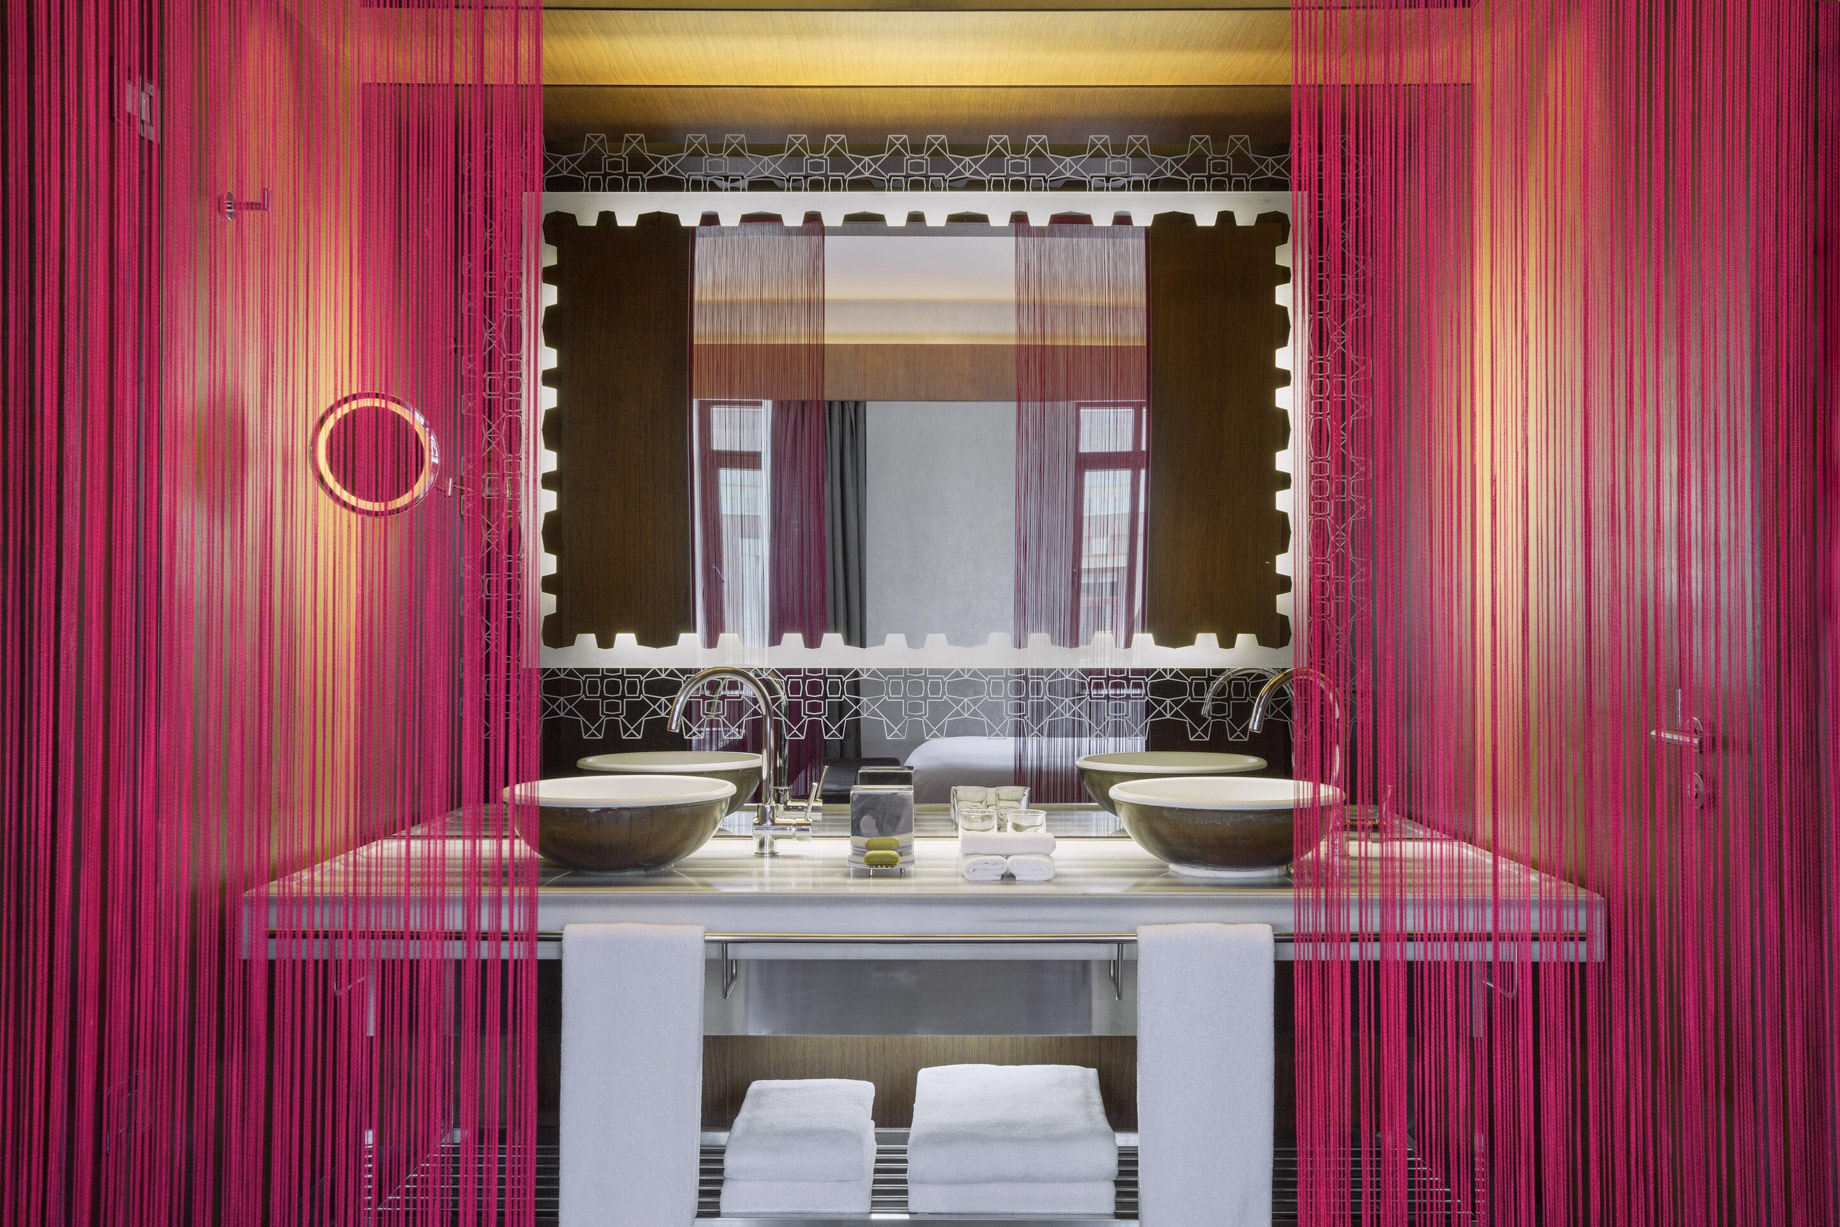 W Istanbul Hotel – Istanbul, Turkey – Guest Bathroom Vanity